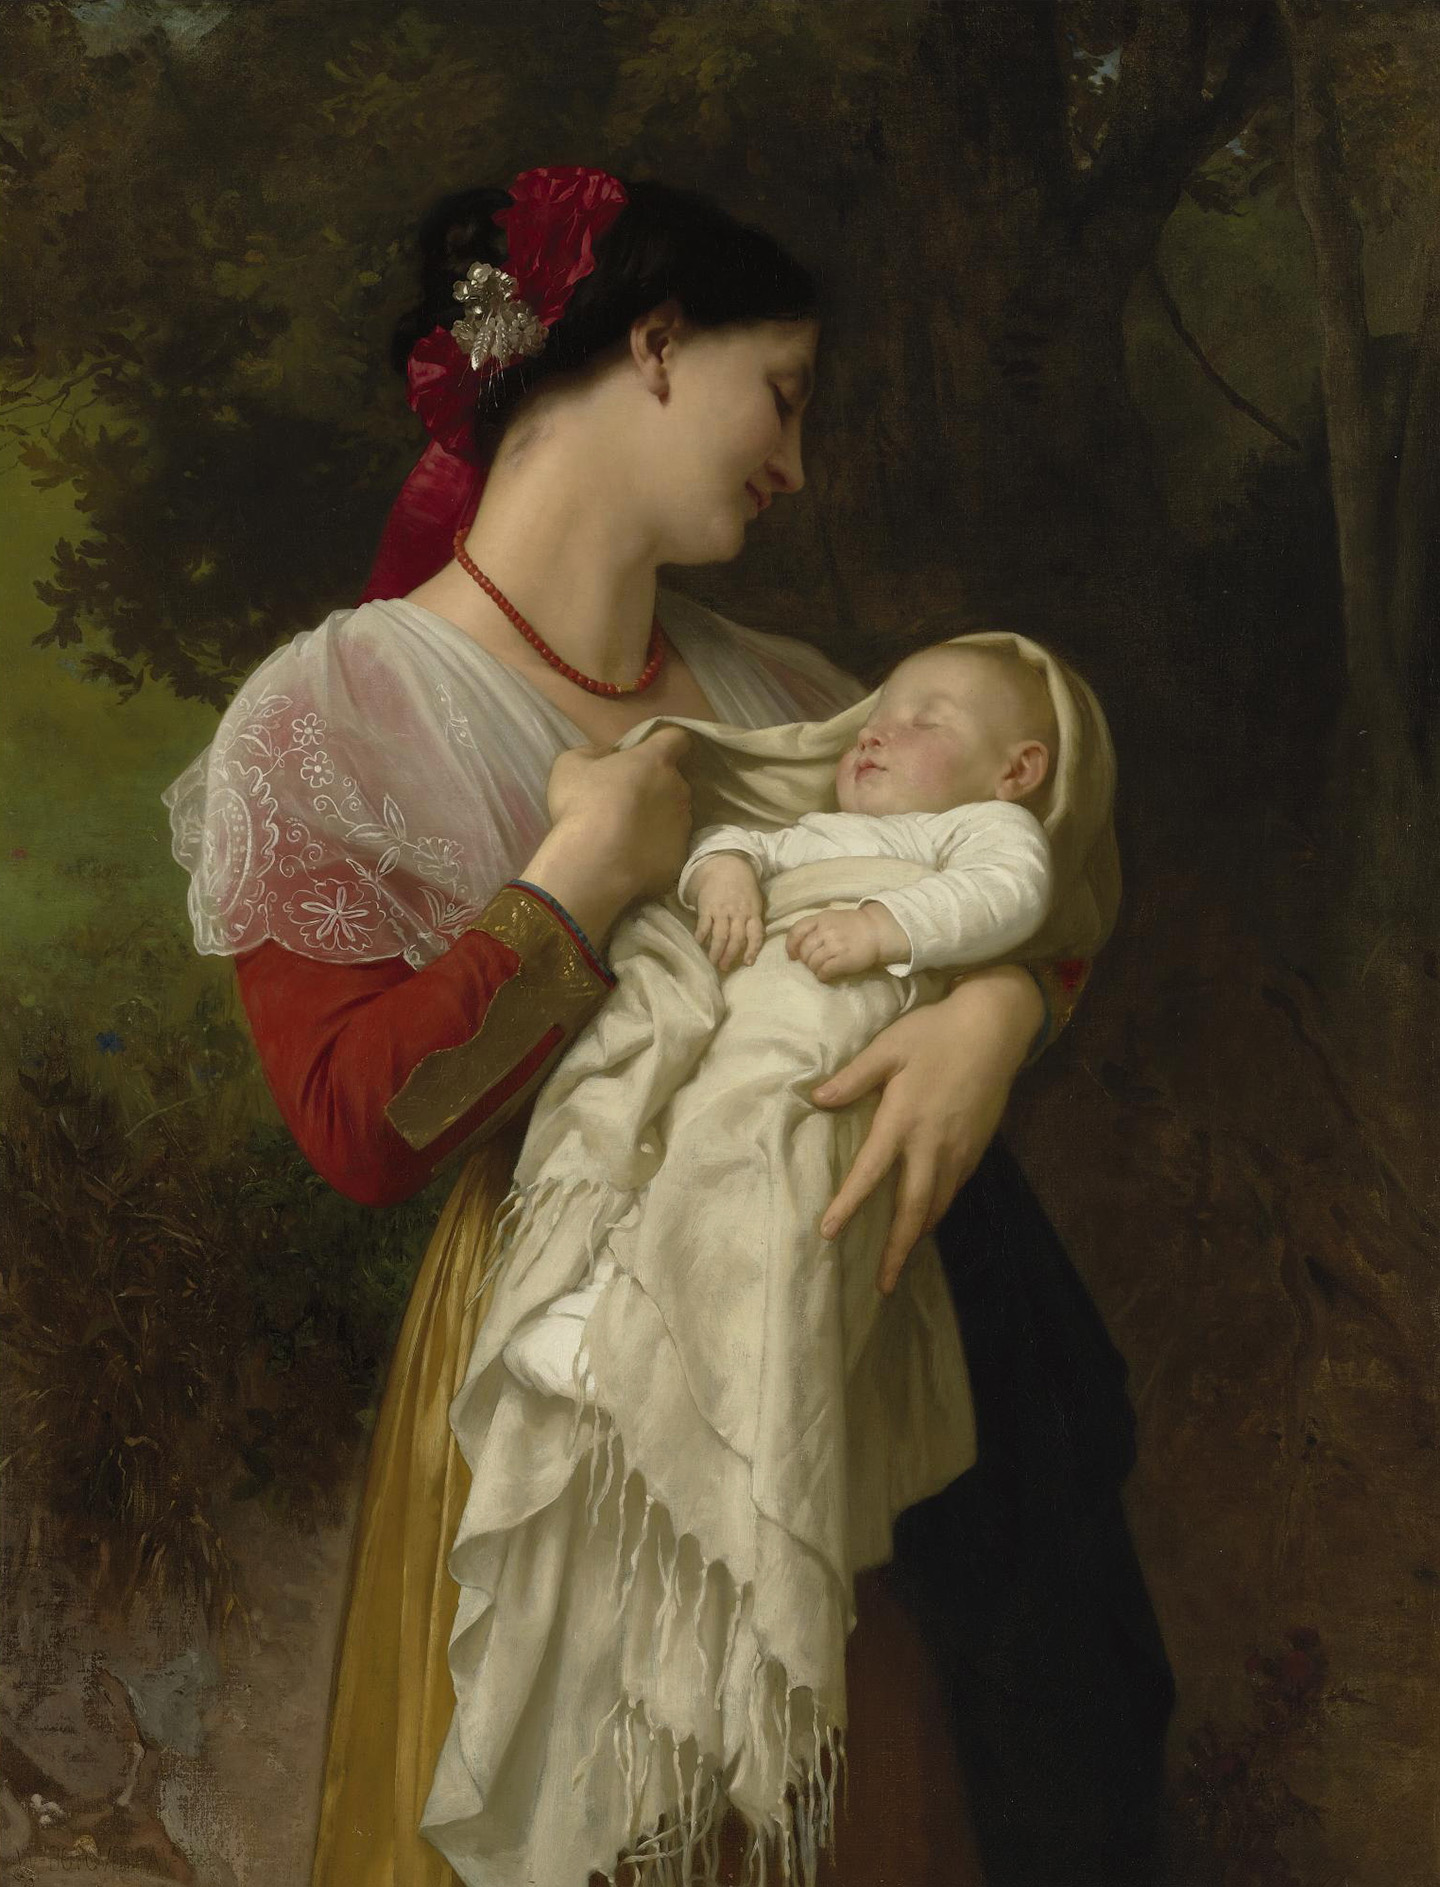 Tác phẩm “Maternal Admiration” của họa sĩ William Adolphe Bouguereau, năm 1869. Tranh sơn dầu trên vải canvas. Bộ sưu tập Tư nhân. (Ảnh: Tài liệu công cộng)